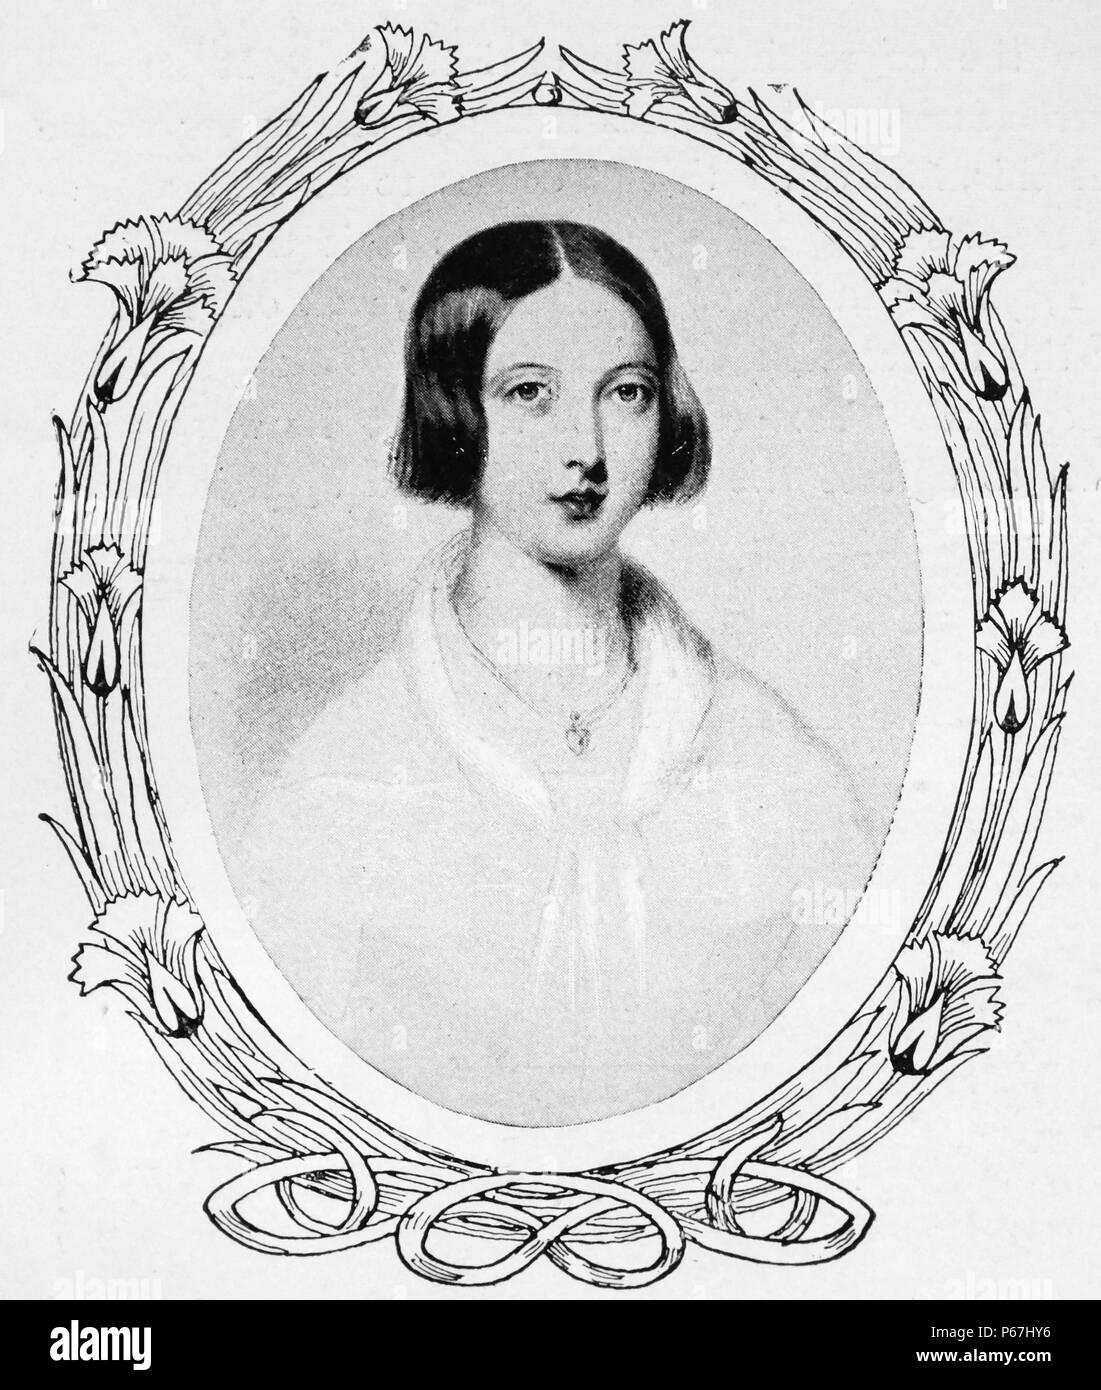 La reine Victoria de Grande-Bretagne 1842. Victoria (Alexandrina Victoria ; 24 mai 1819 - 22 janvier 1901) a été le monarque du Royaume-Uni de Grande-Bretagne et d'Irlande de 20 juin 1837 jusqu'à sa mort. À partir du 1er mai 1876, elle a utilisé le titre supplémentaire de l'Impératrice de l'Inde Banque D'Images